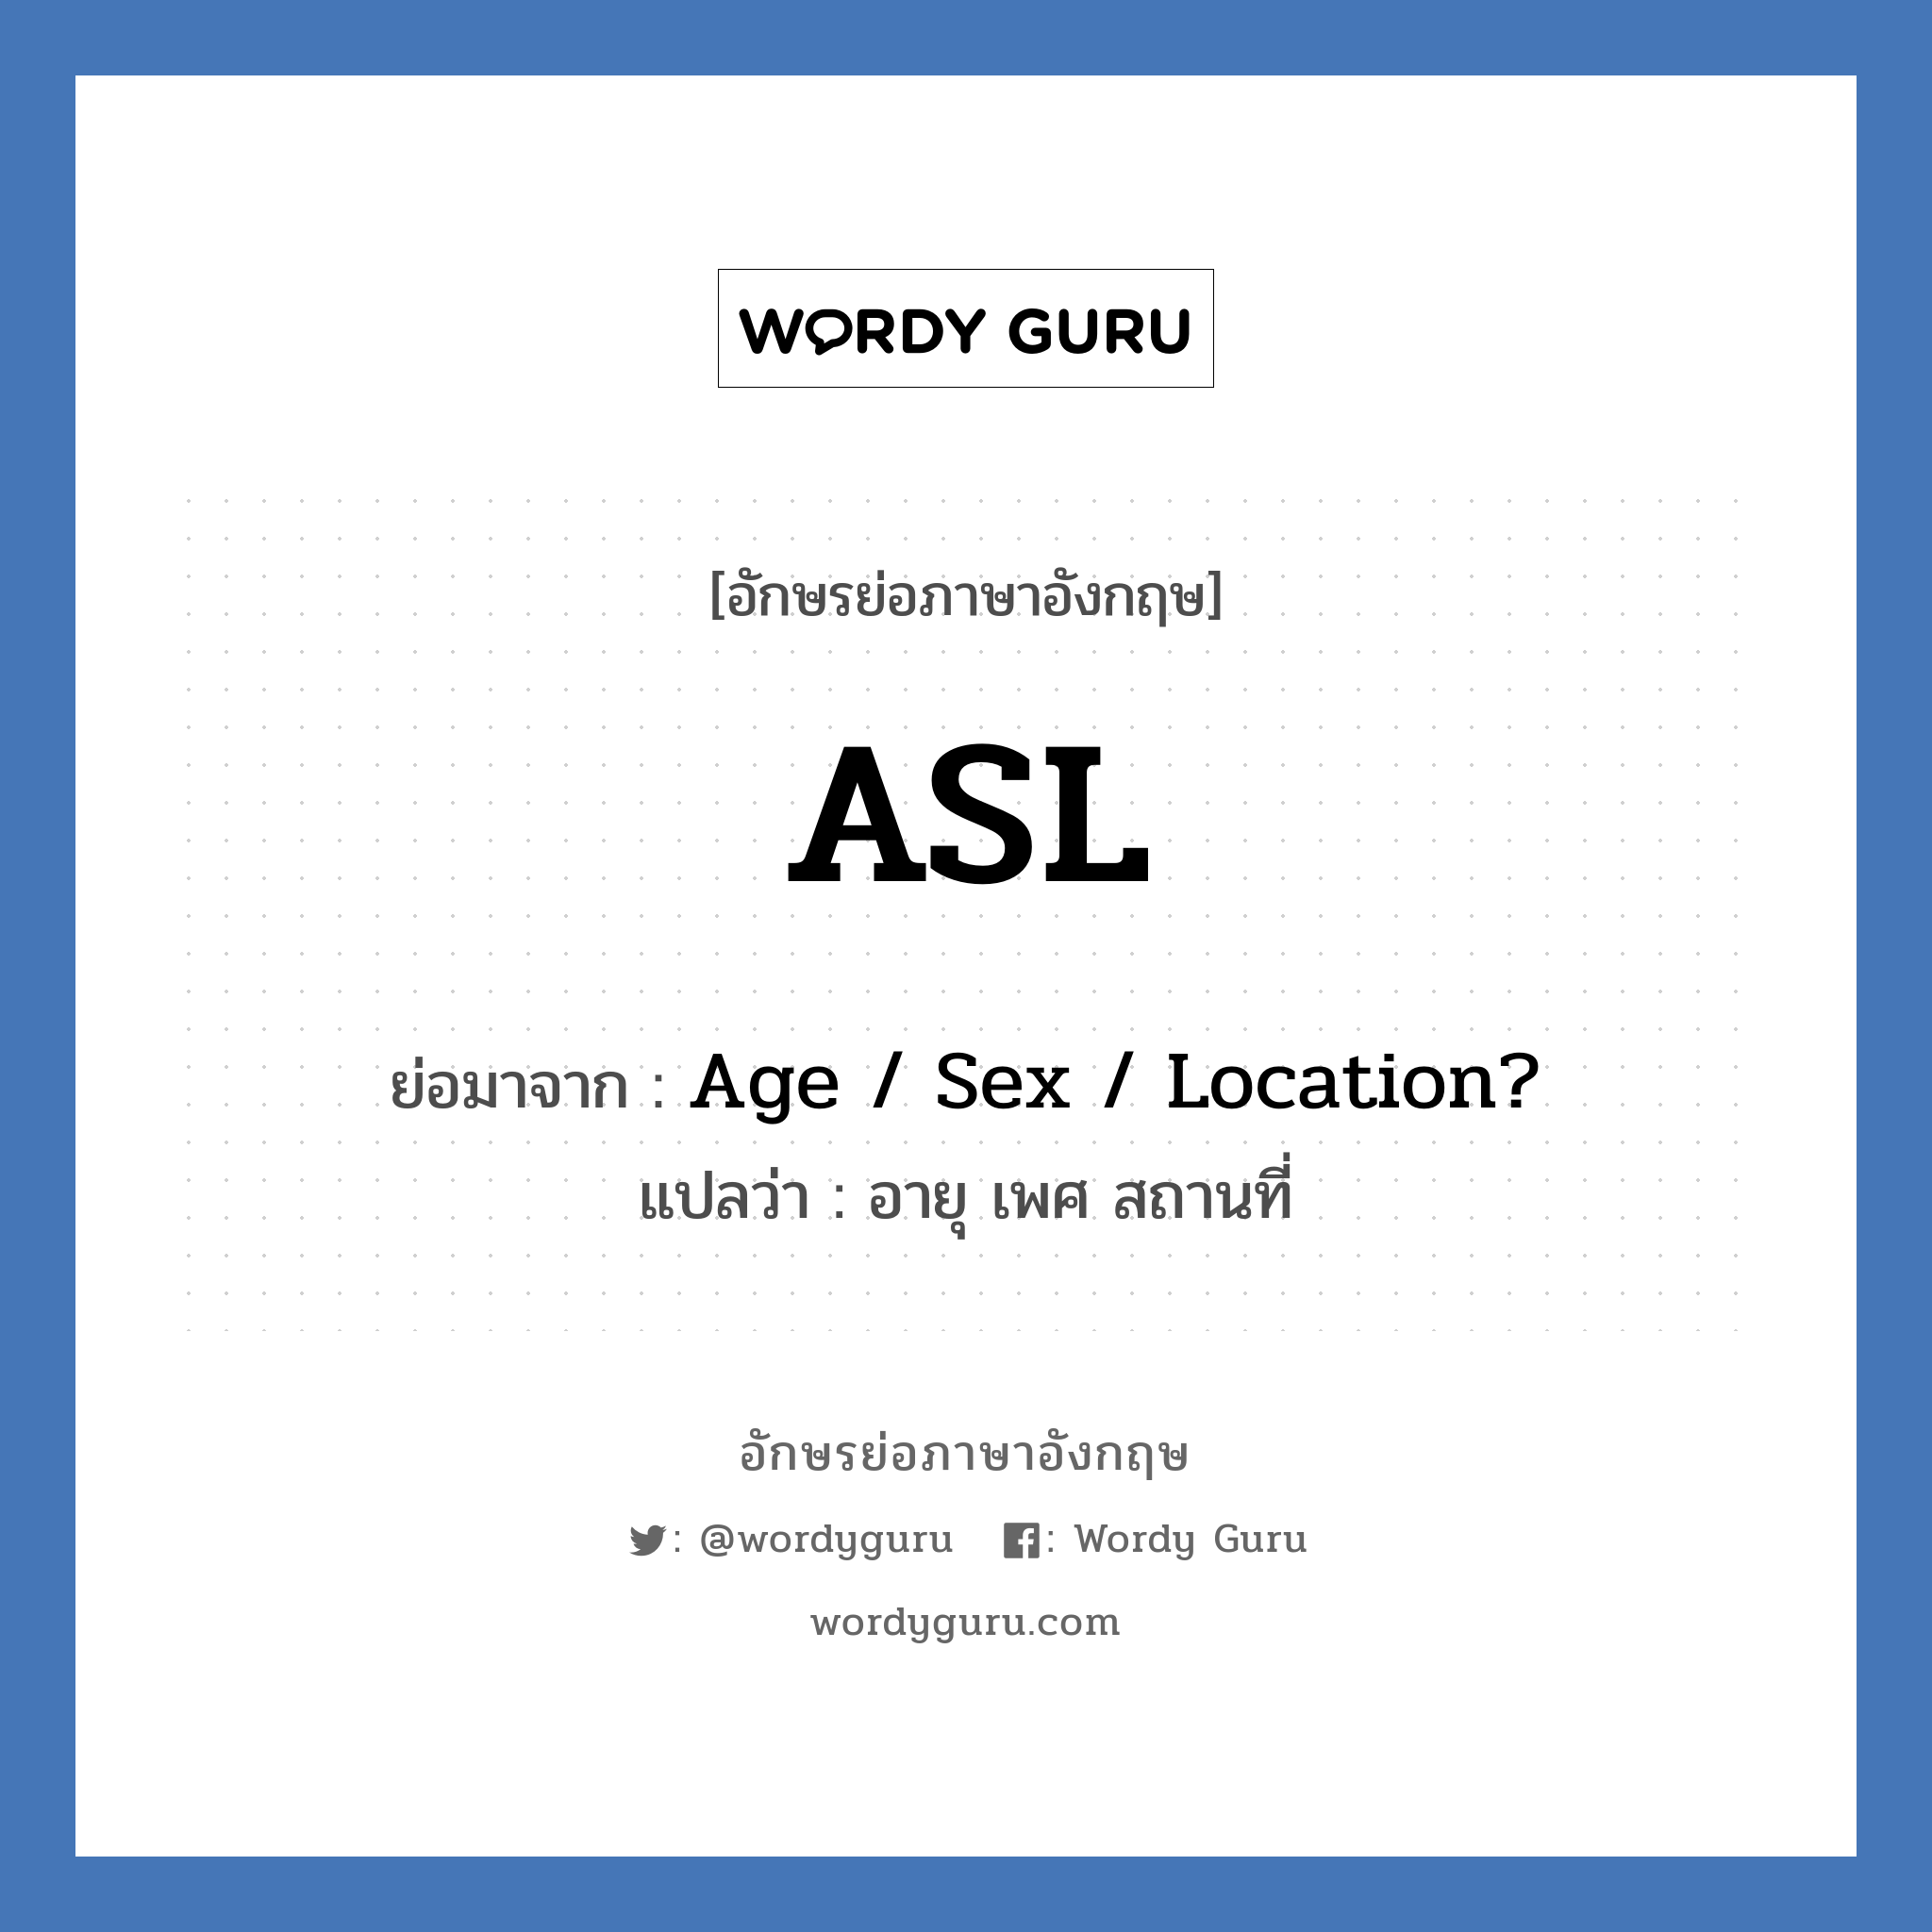 ASL ย่อมาจาก? แปลว่า?, อักษรย่อภาษาอังกฤษ ASL ย่อมาจาก Age / Sex / Location? แปลว่า อายุ เพศ สถานที่